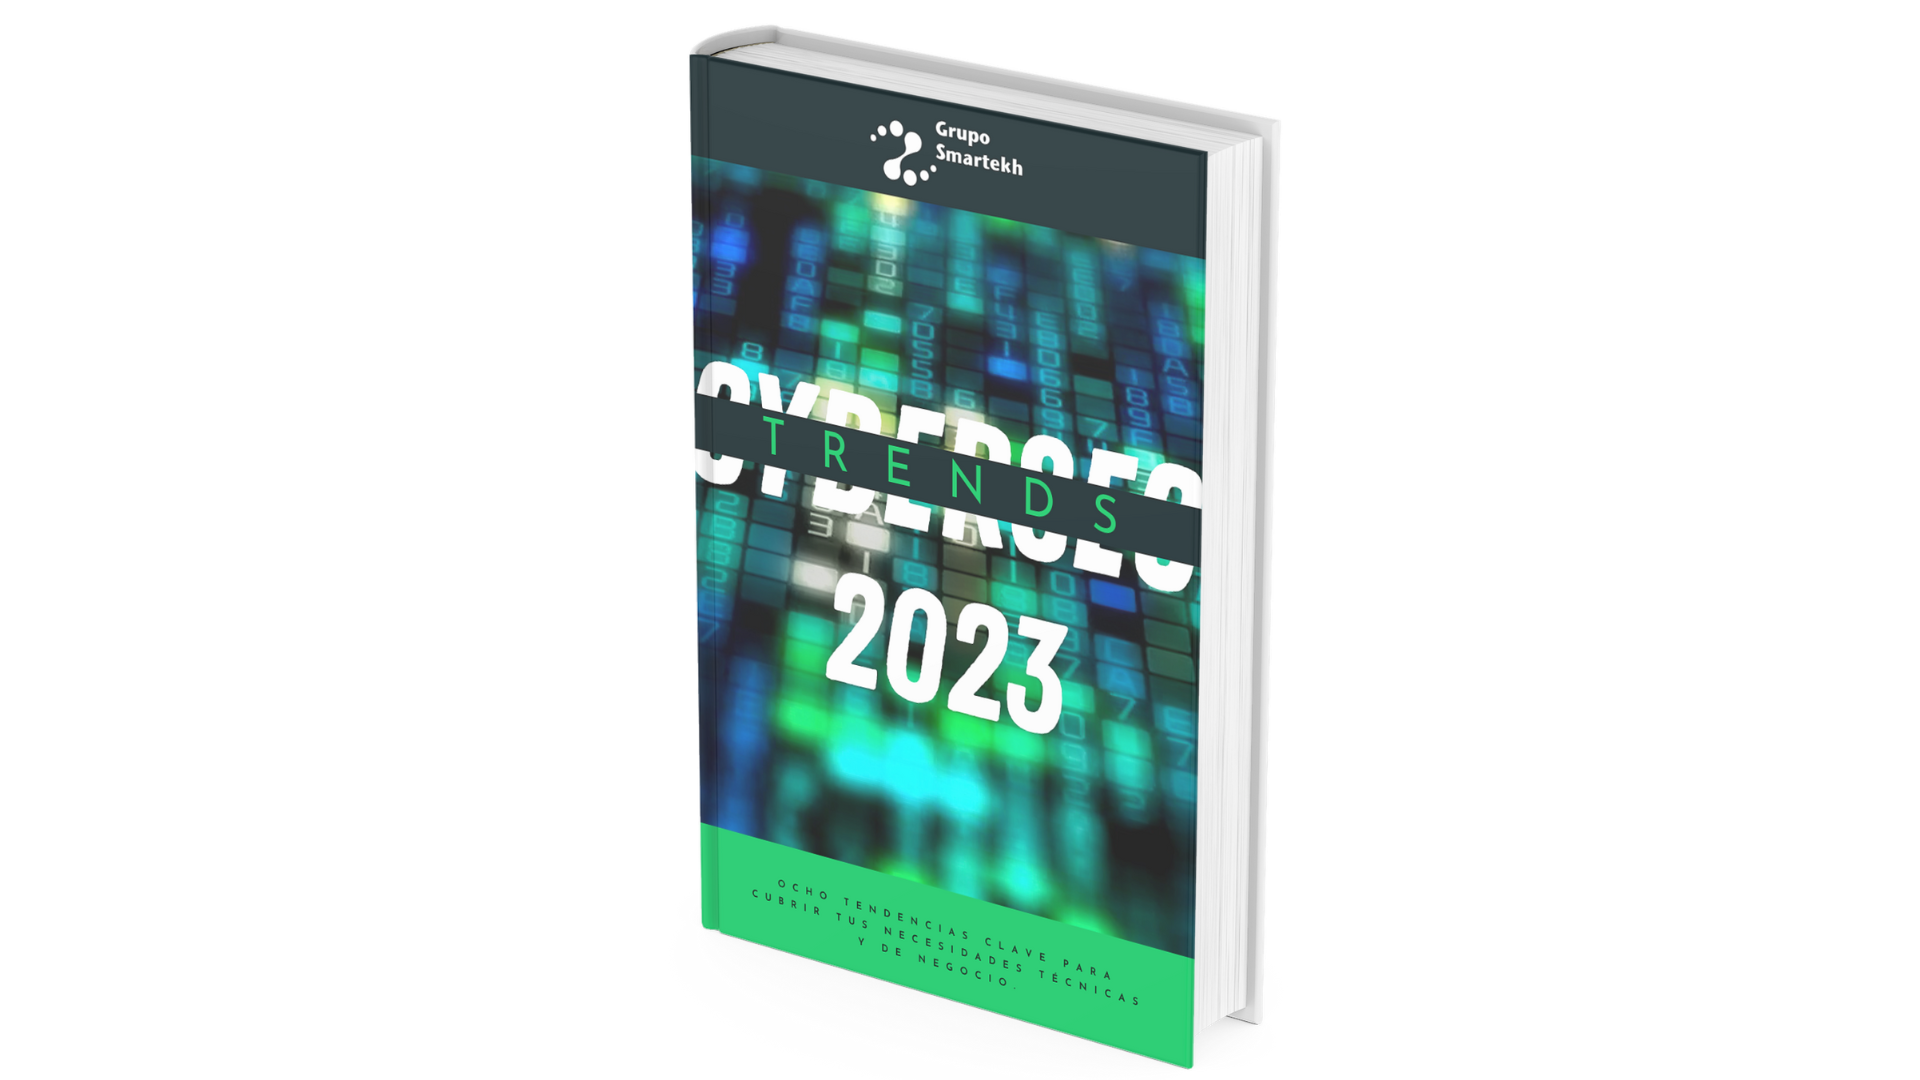 E-book con tendencias en seguridad para 2023